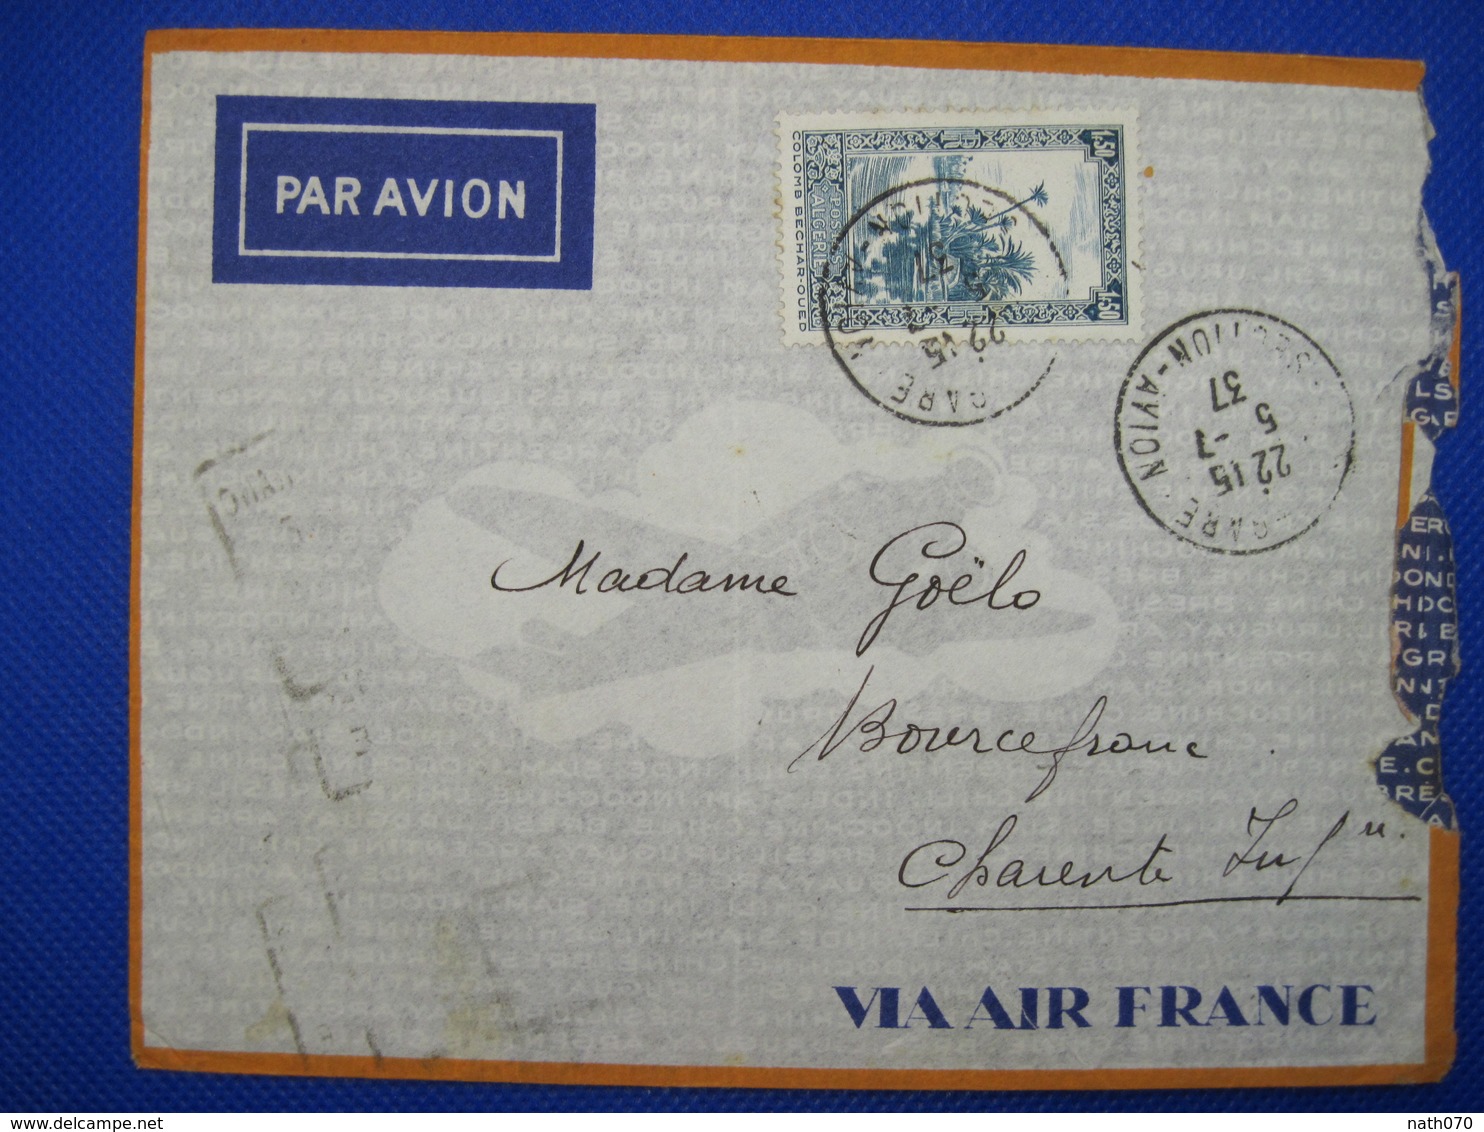 Algérie France 1937 BOURCEFRANC Par Avion Air Mail Lettre Enveloppe Cover Colonie PA 1,50f Seul Section - Covers & Documents